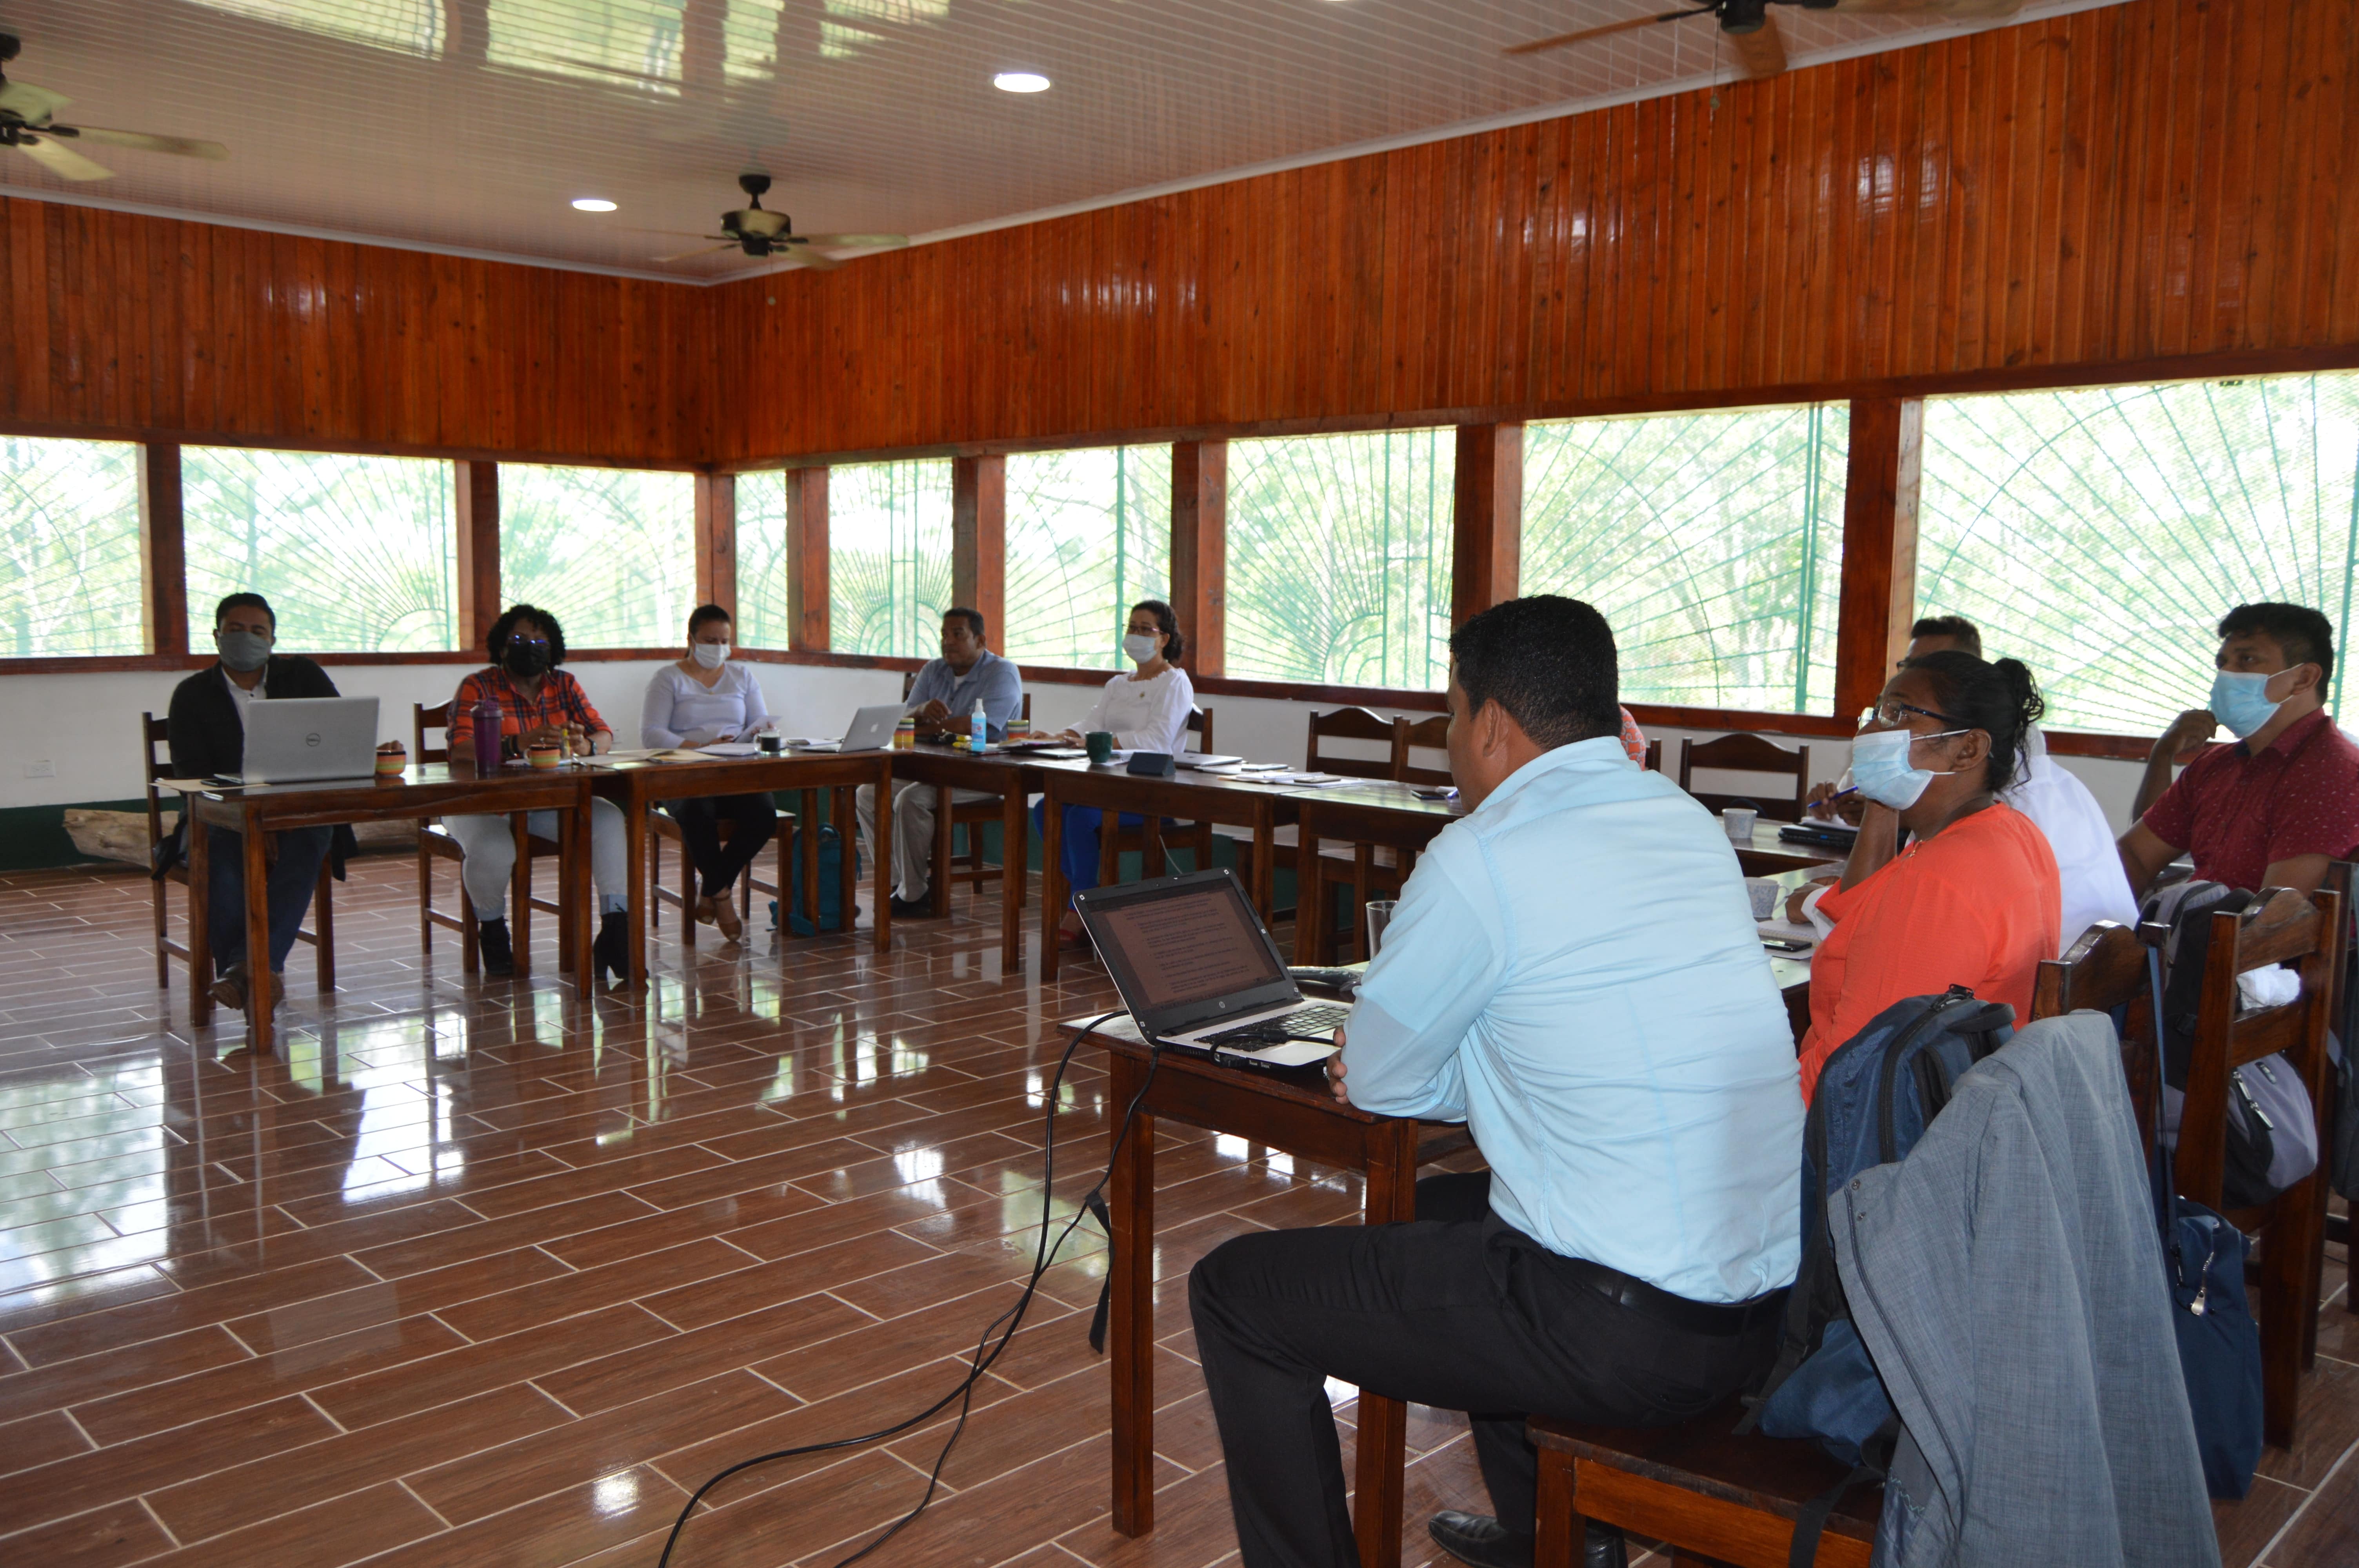 Regional Regional Regional Education System (SEAR) organizational session at URACCAN Bilwi campus